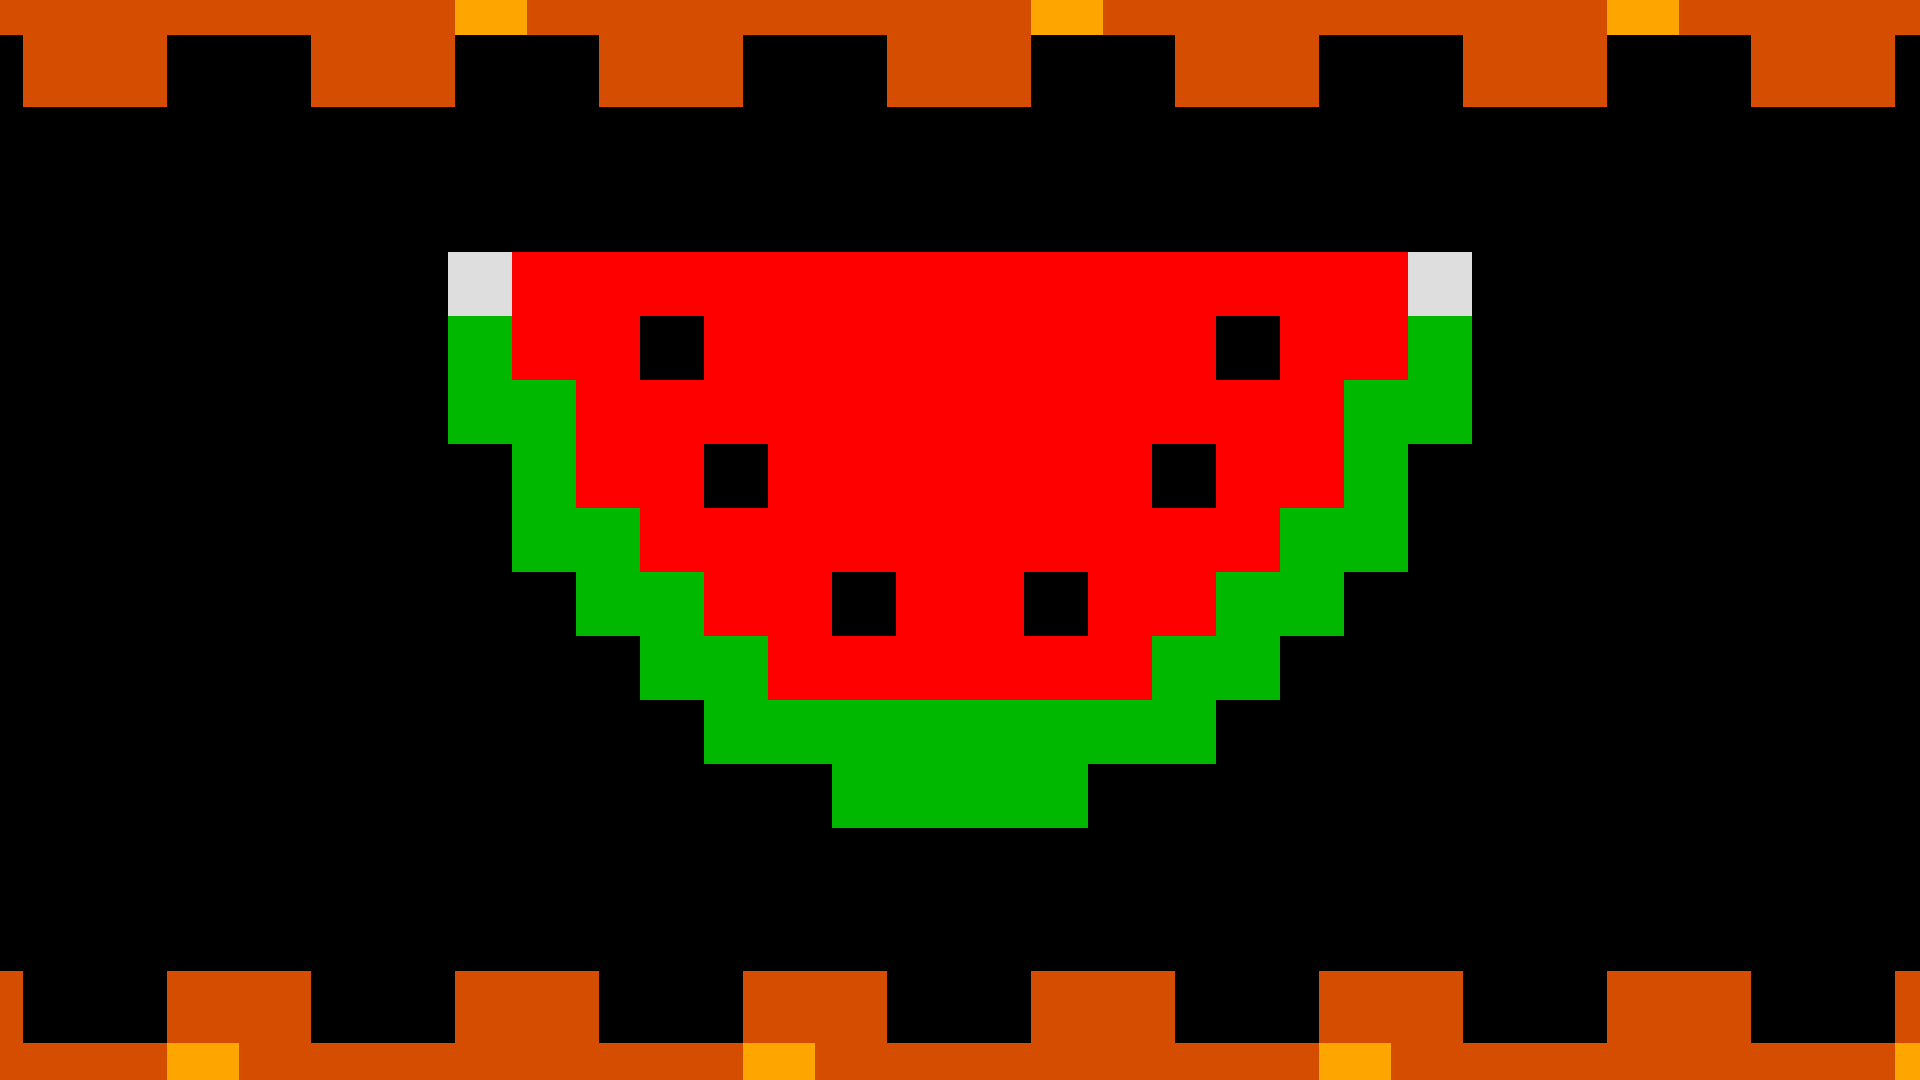 Icon for Watermelon